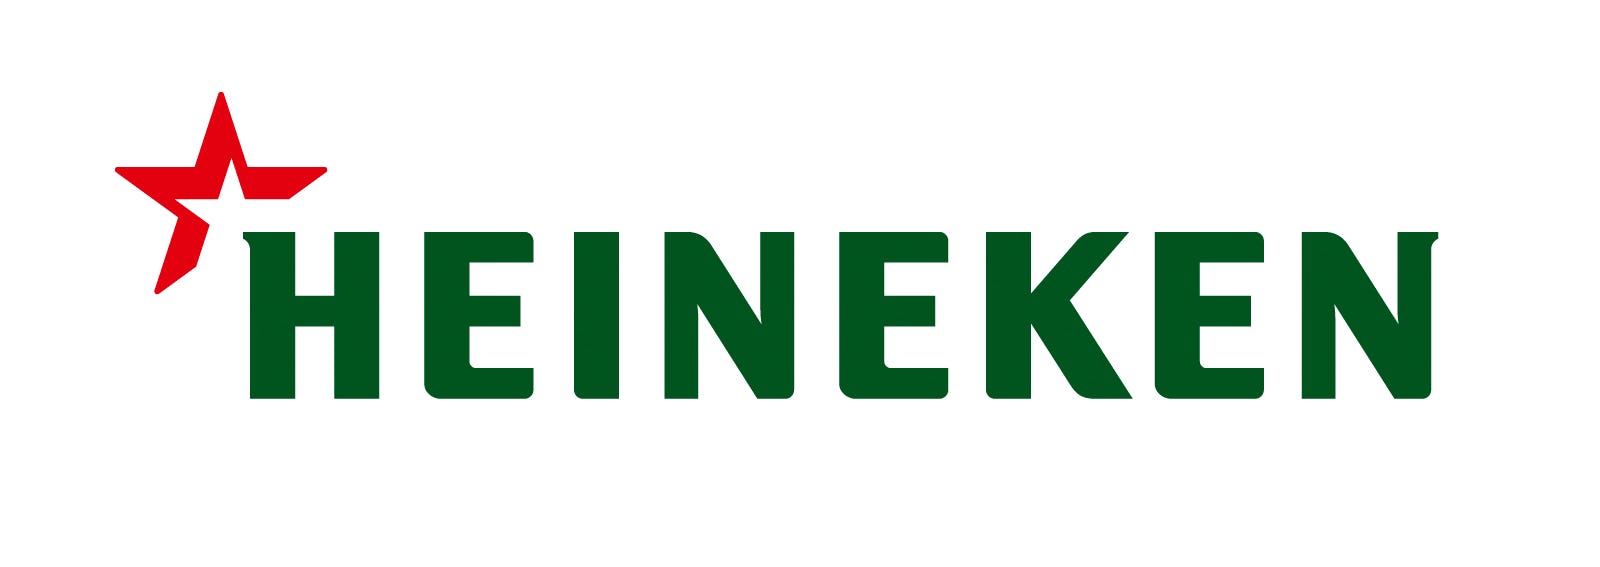 Minder winst voor Heineken